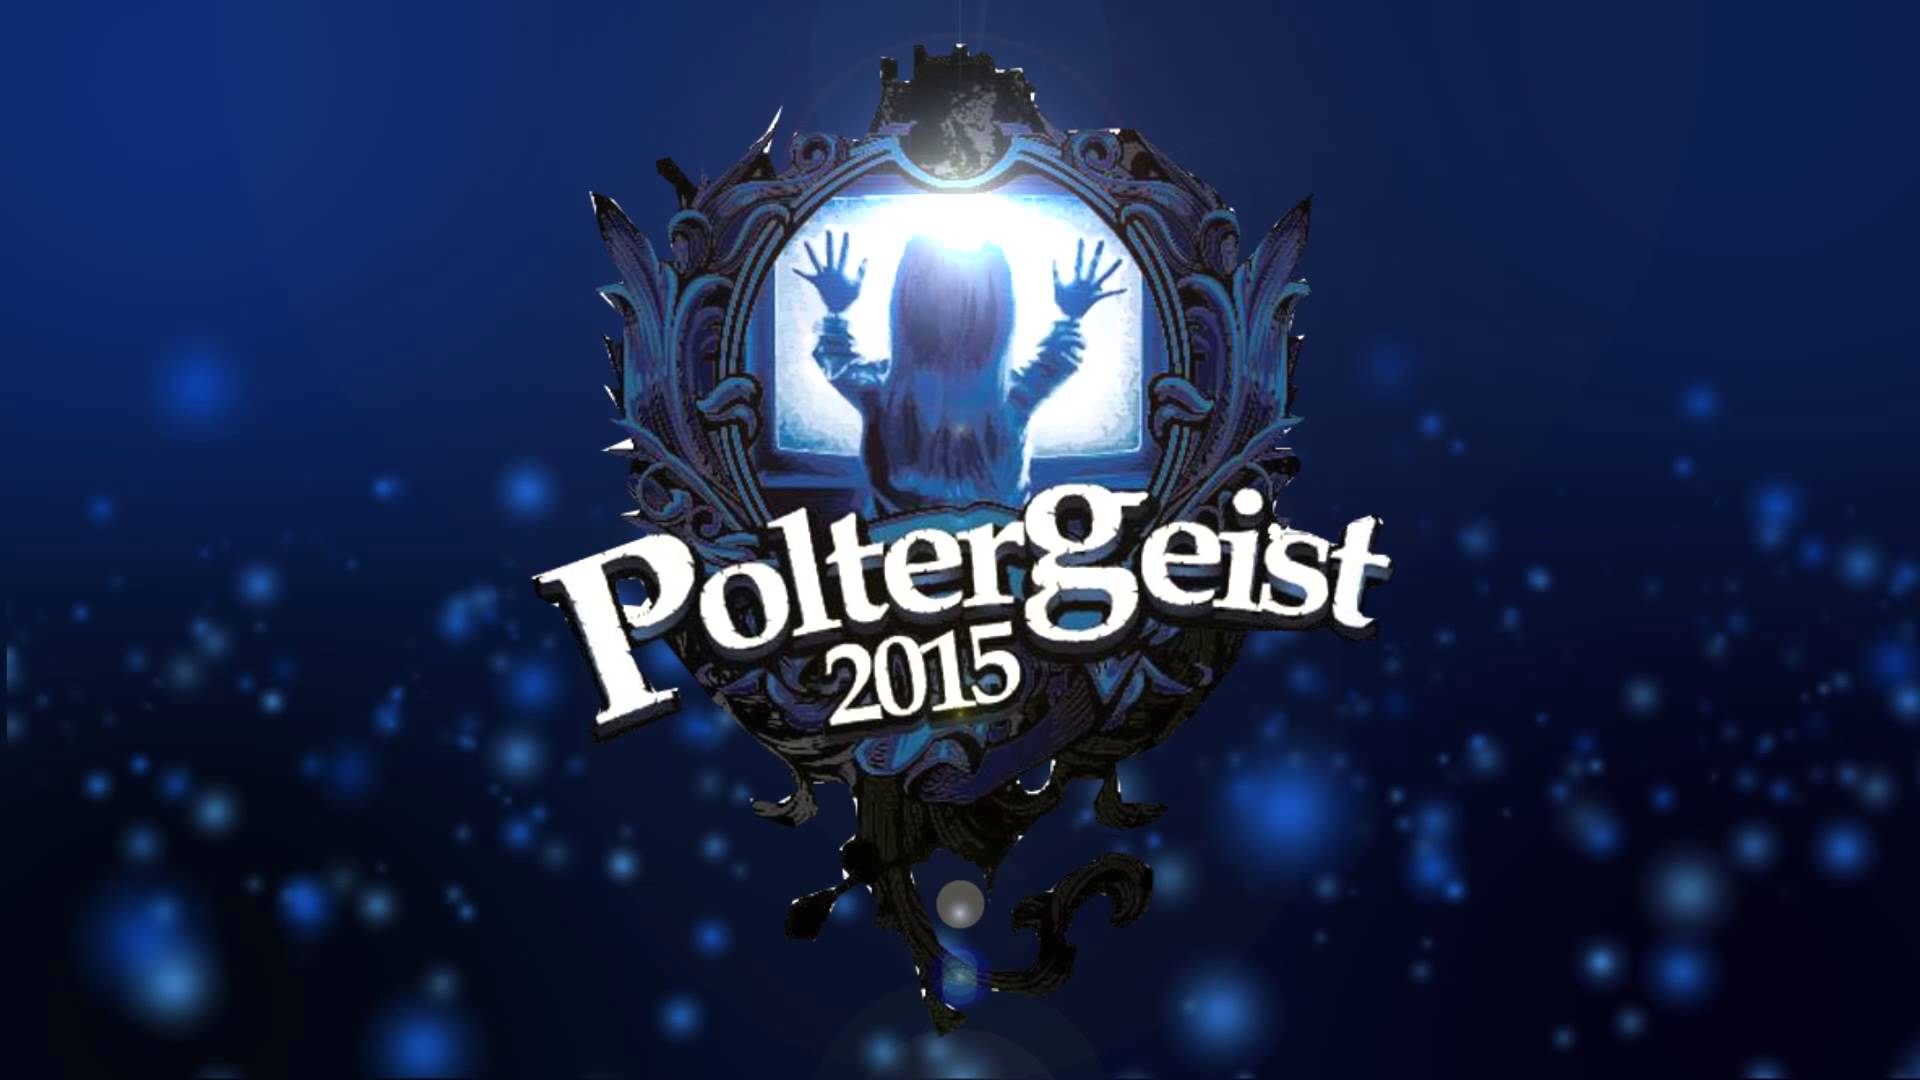 Poltergeist 2015 - Stian Rasmussen ft. Rebecca Dolati - YouTube